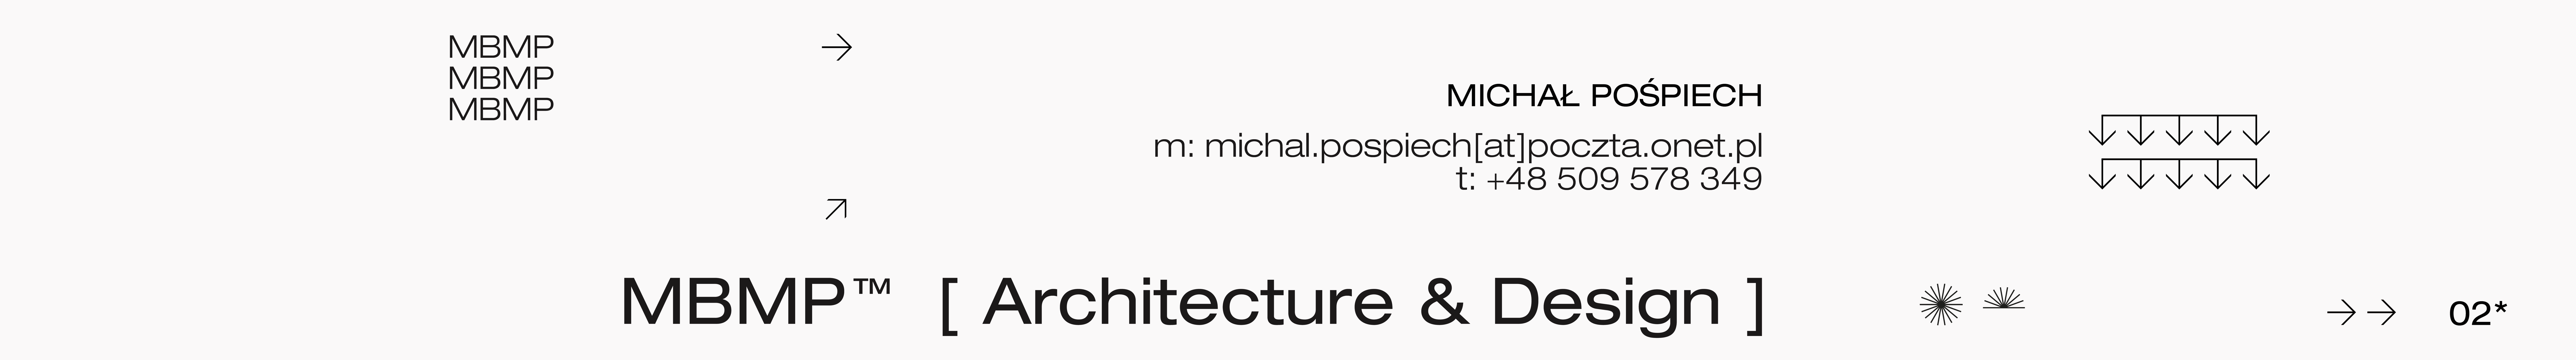 Banner de perfil de MBMP TM